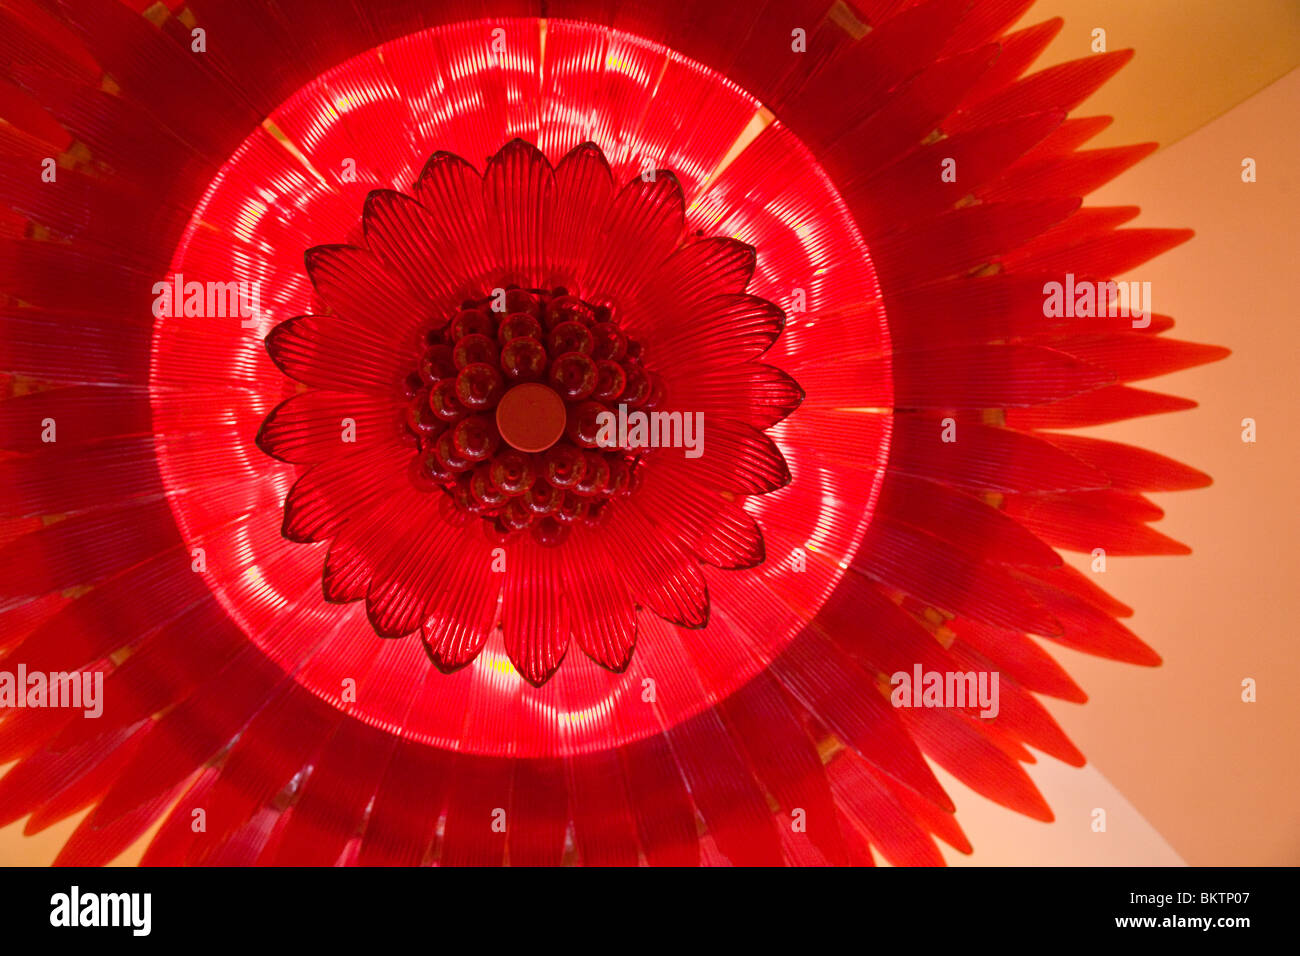 Appareil d'éclairage rouge à l'intérieur de l'HÔTEL ET CASINO WYNN ENCORE ressemble à une fleur - LAS VEGAS, NEVADA Banque D'Images